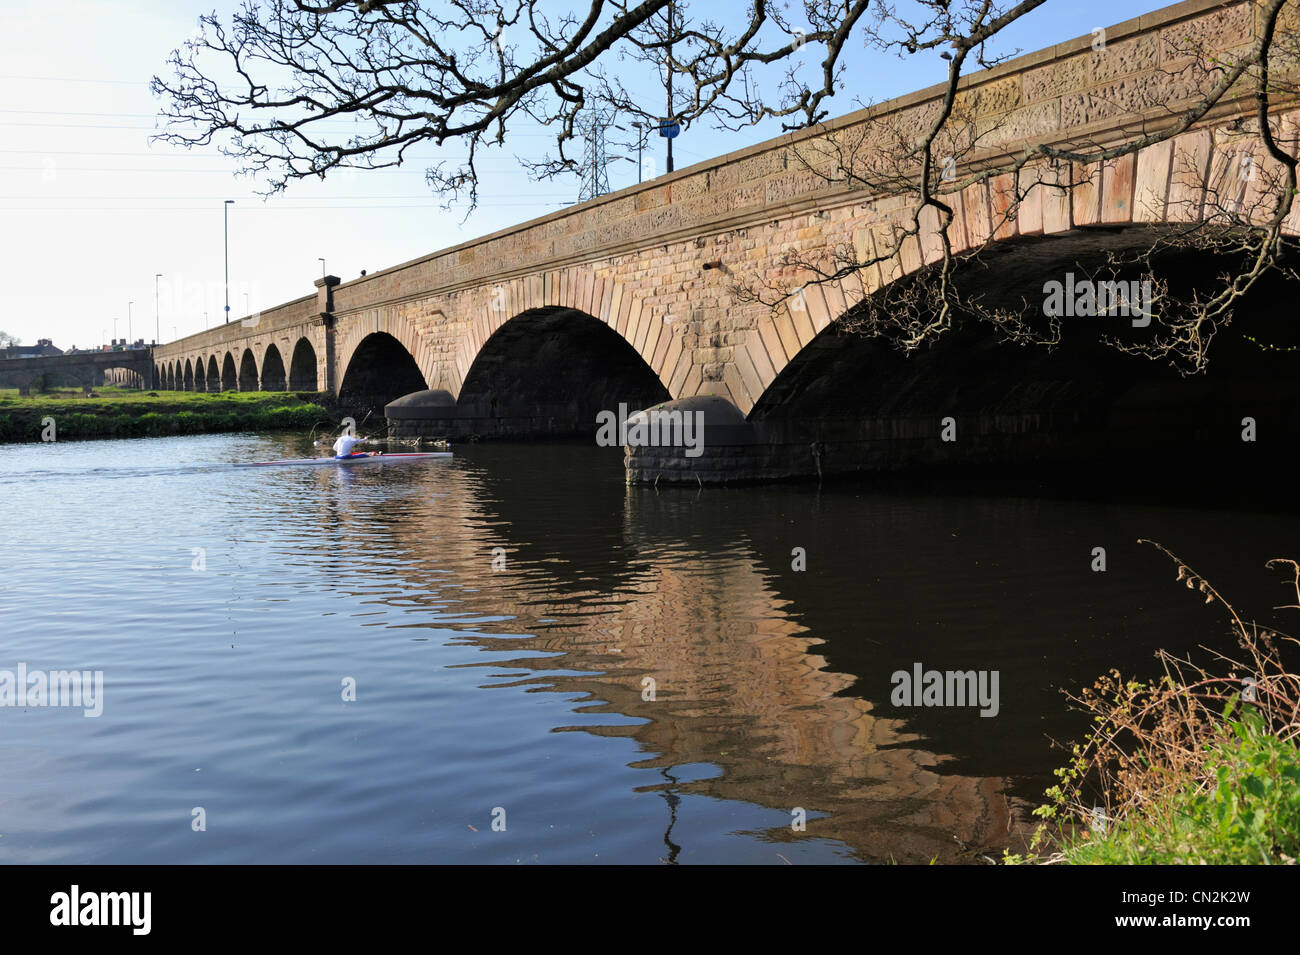 Old Burton Bridge in Burton upon Trent, river Trent Stock Photo